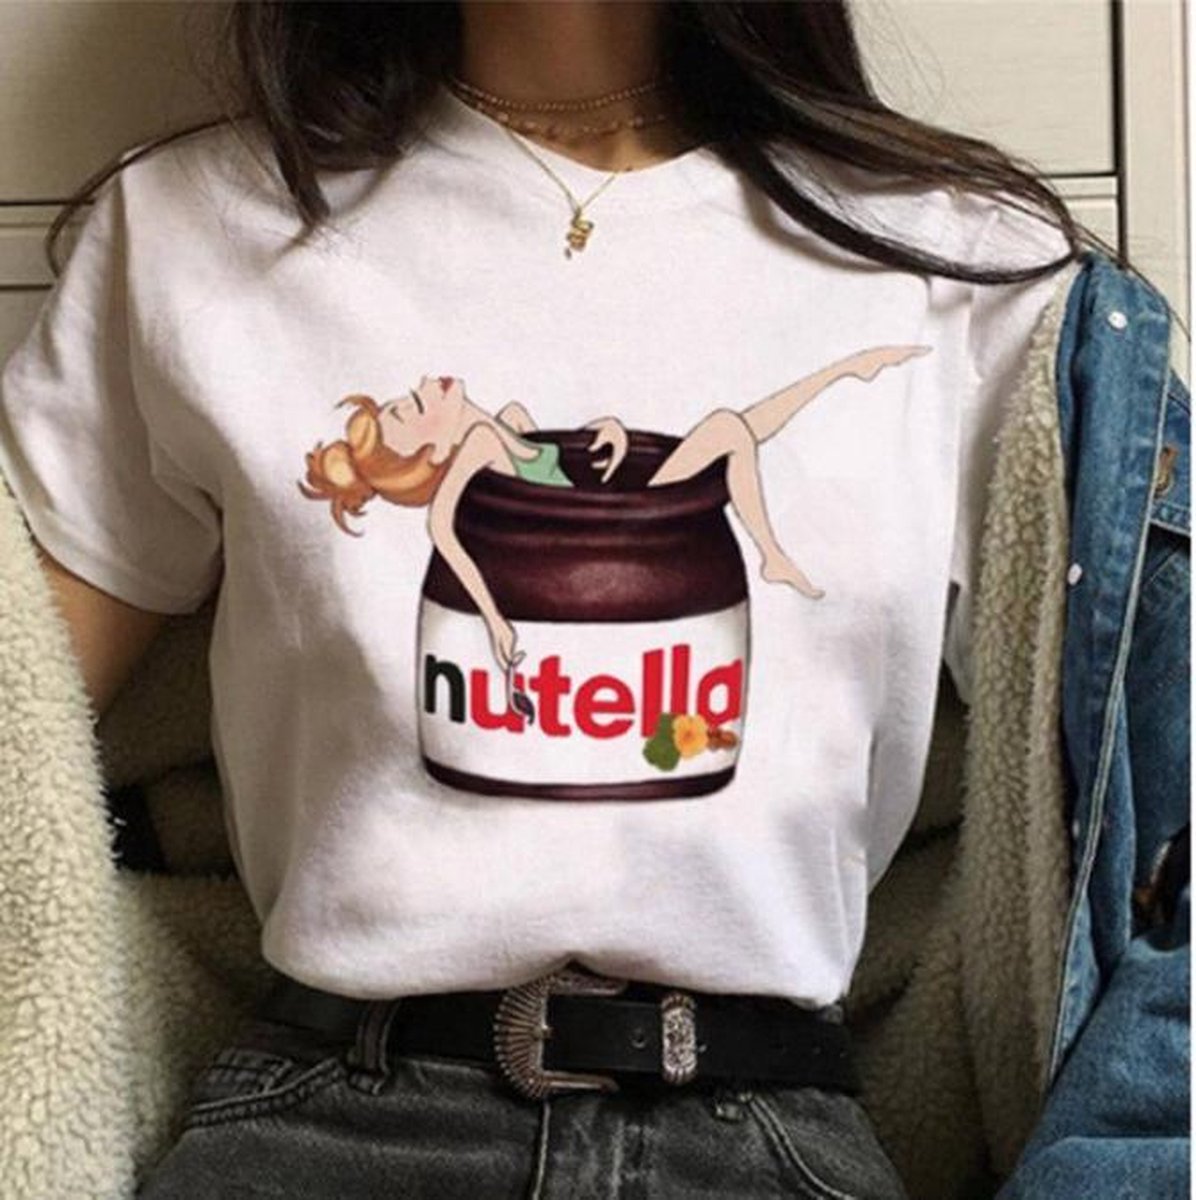 Verniel Malen Gecomprimeerd Fun T-shirt met Engeltje in Nutella pot maat L | bol.com